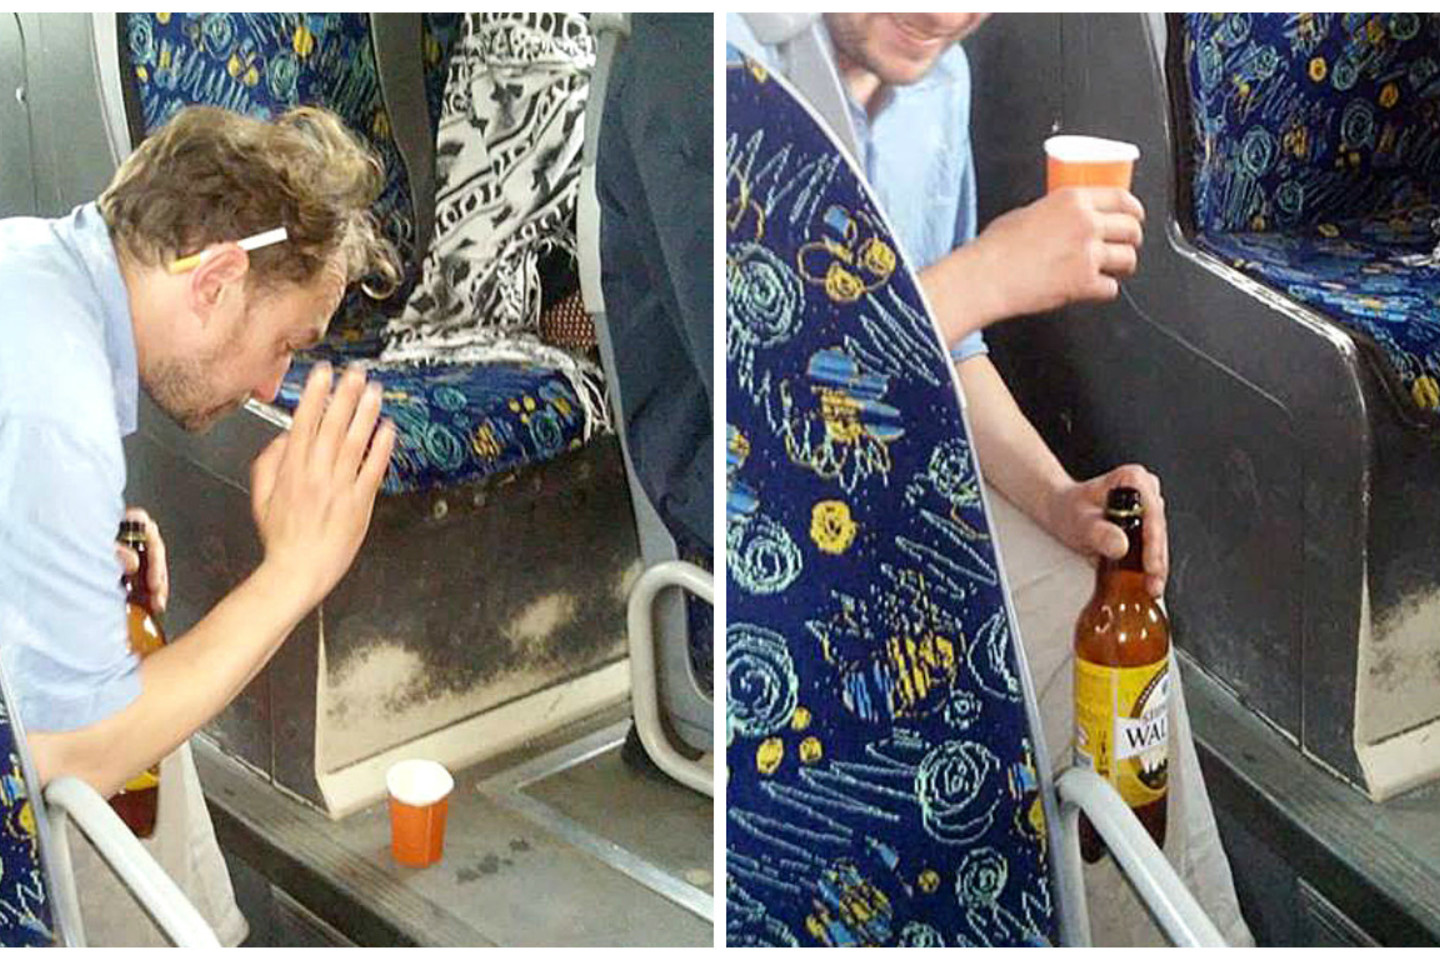  Keleivė užfiksavo autobuse vykusias išgertuves.<br> Lrytas.lt skaitytojo nuotr.